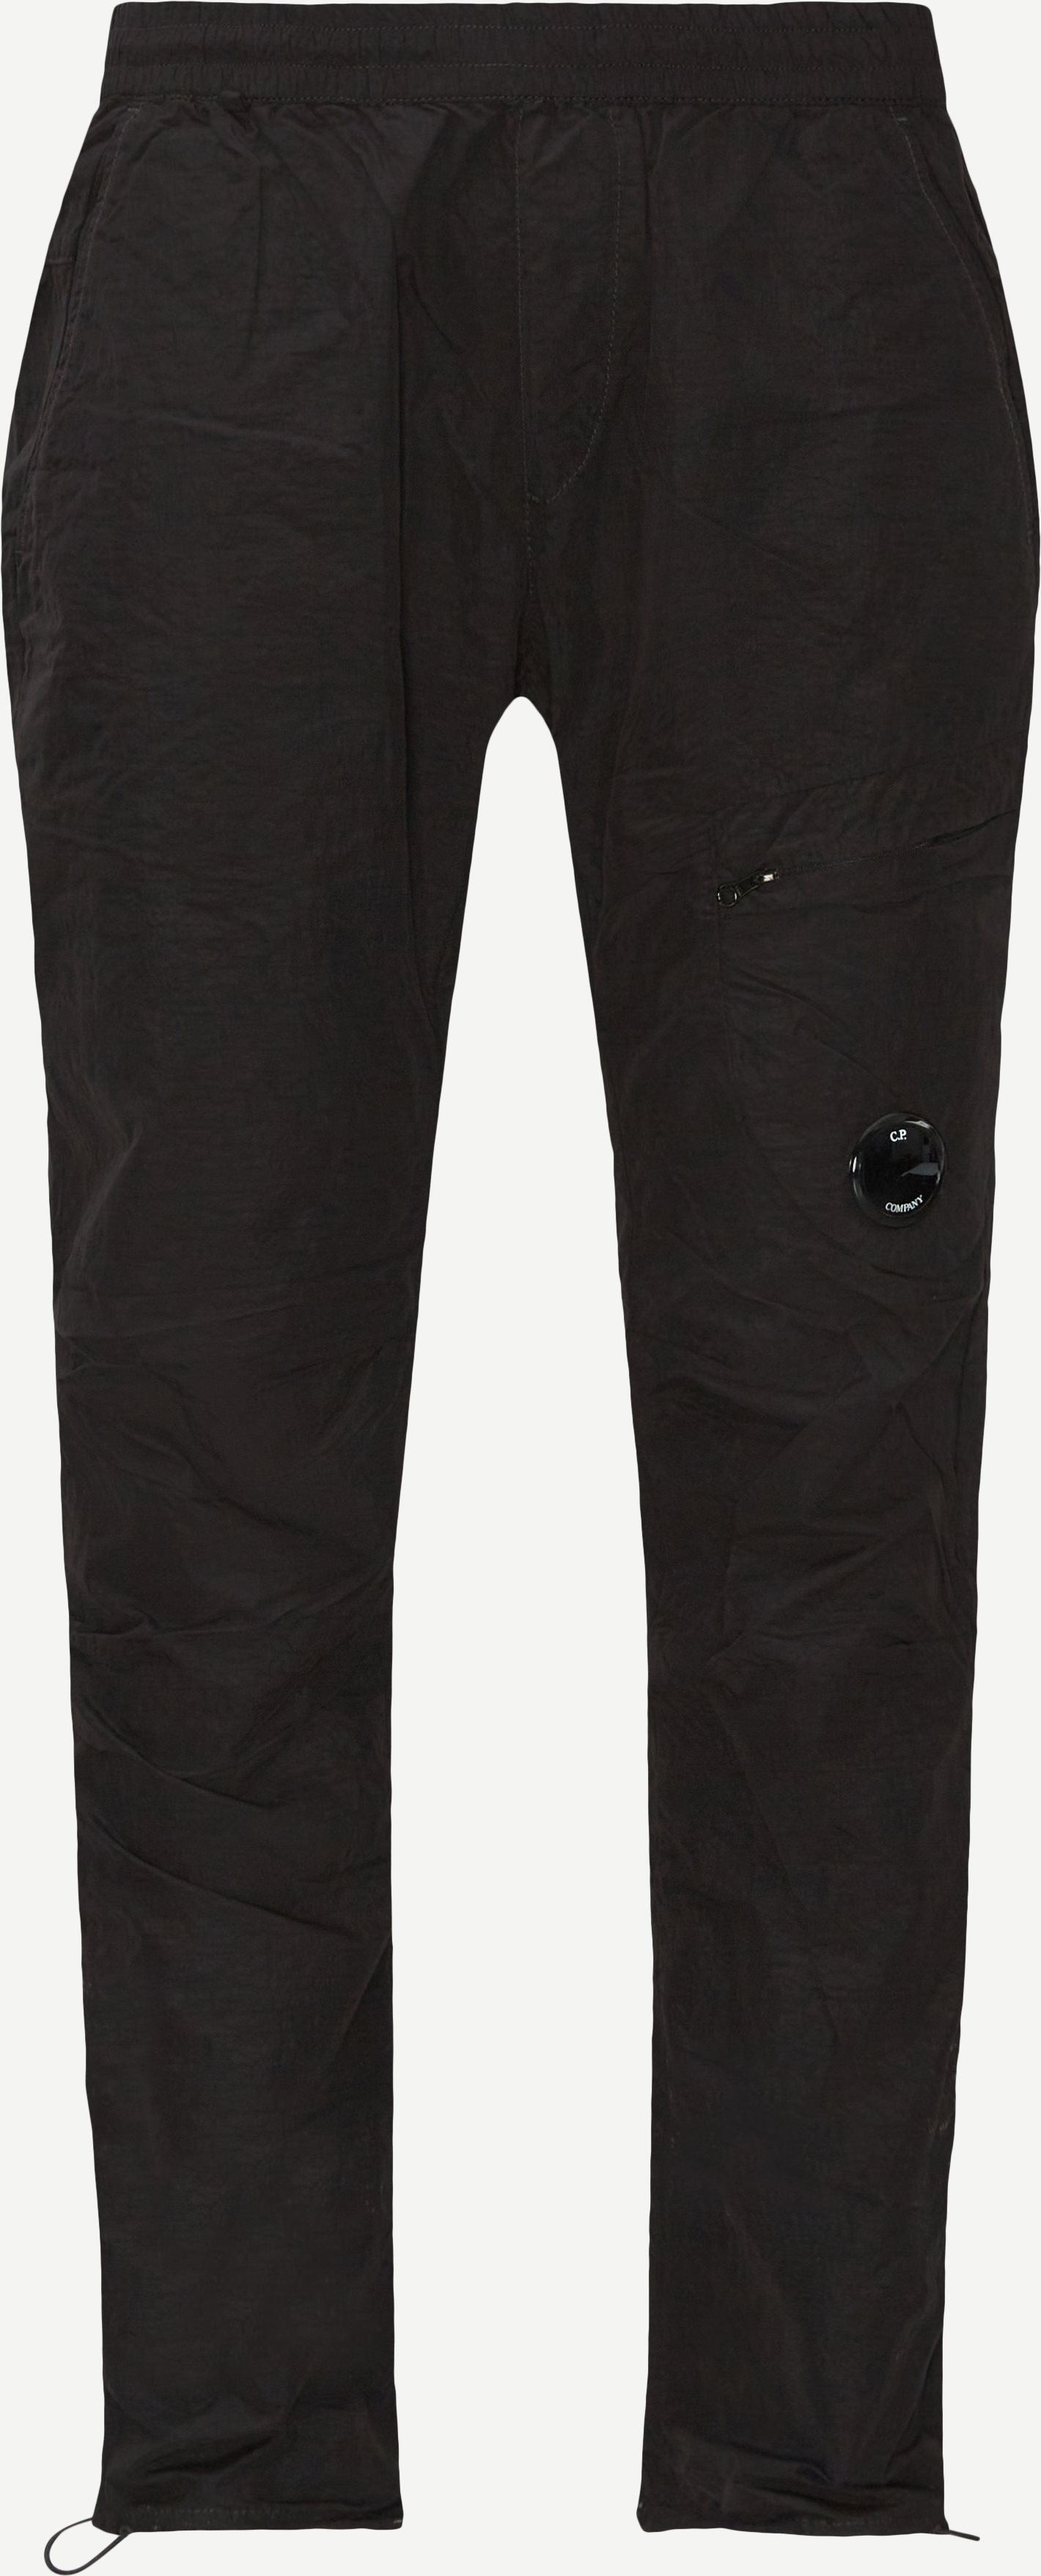 Flatt Nylon Cargo Pants - Bukser - Regular fit - Sort